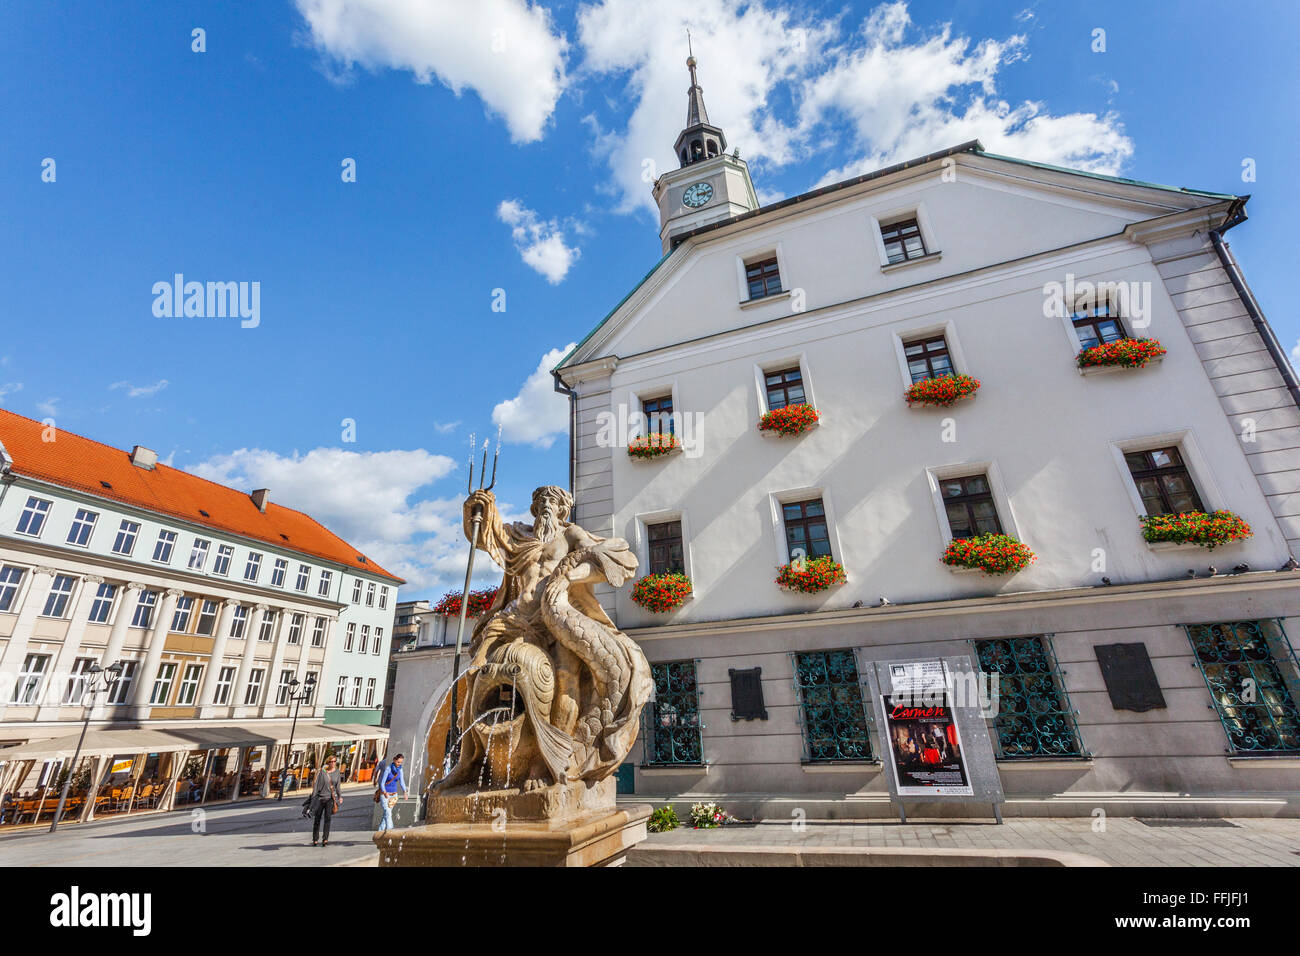 Polonia, la Alta Silesia, Gliwice (Gleiwitz), vista de Rynek, la Plaza del Mercado con su ayuntamiento y la fuente de Neptuno Foto de stock